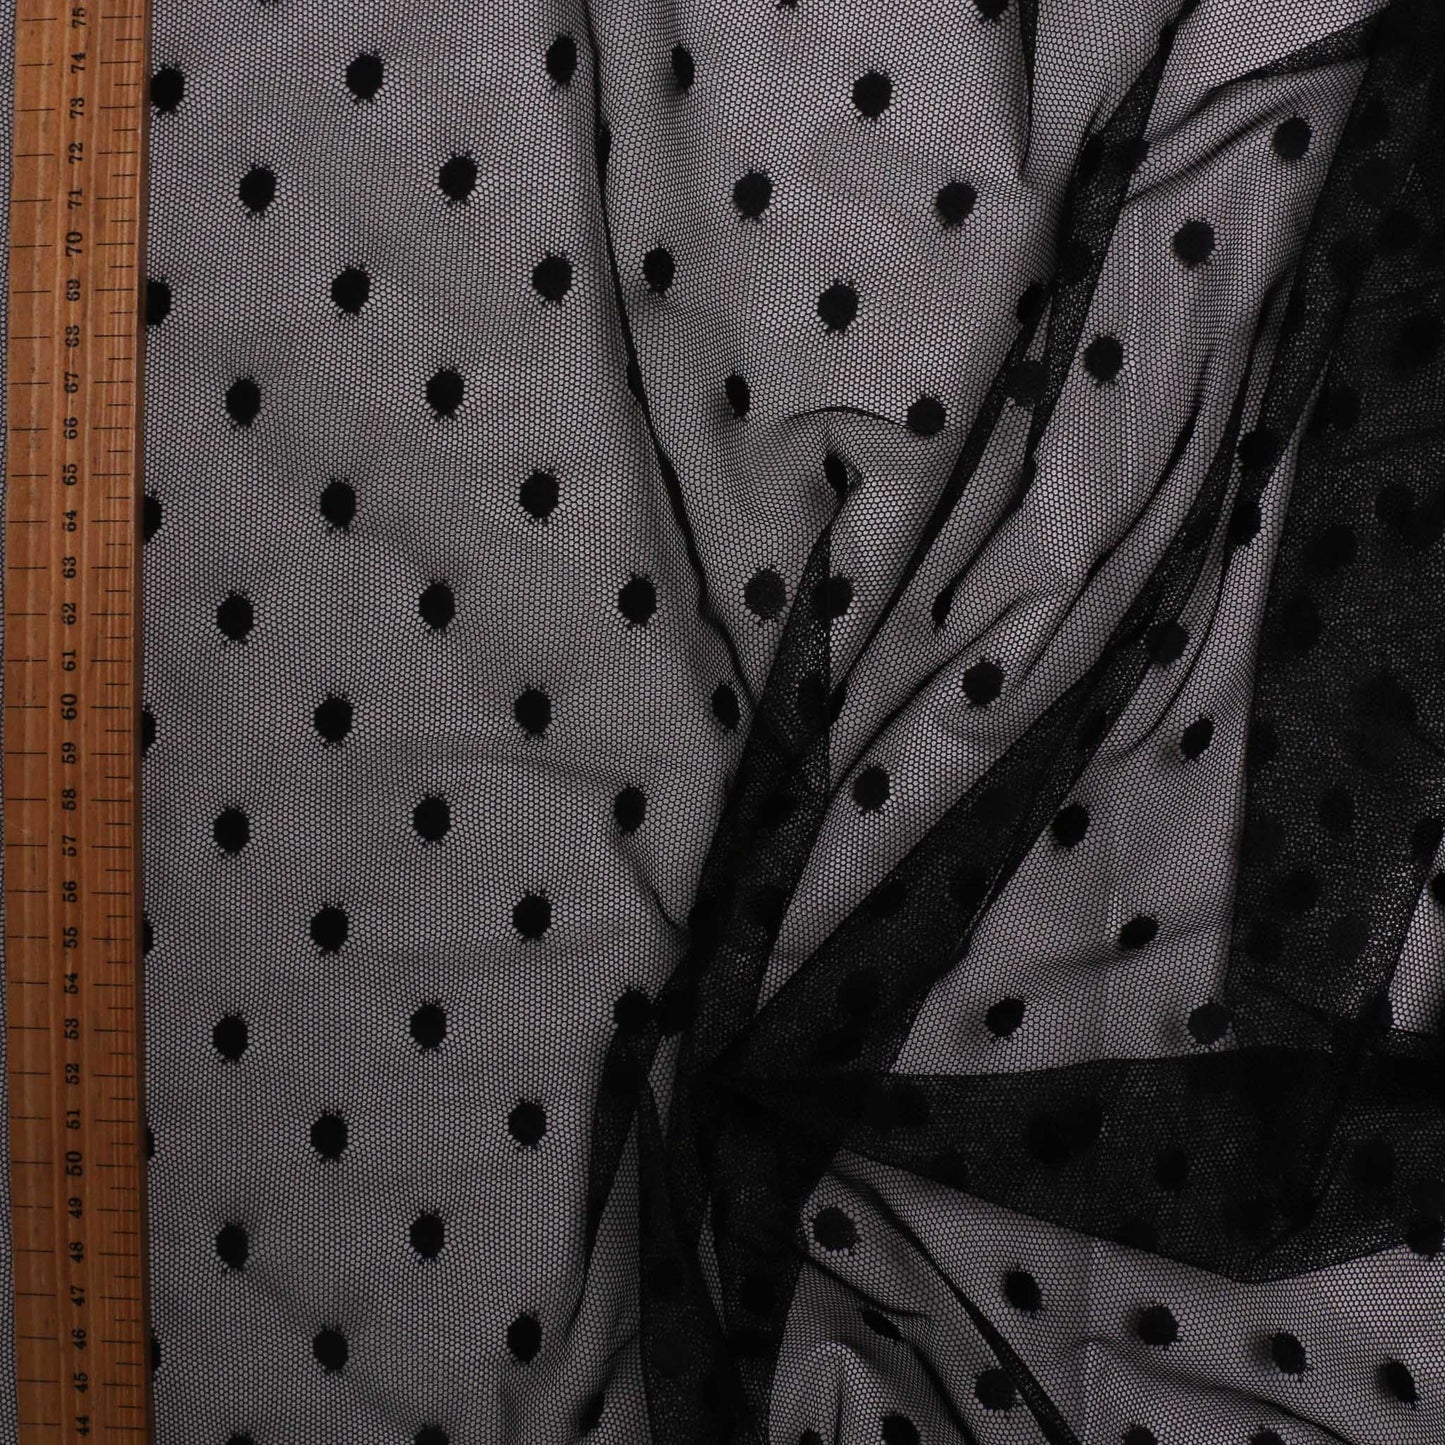 black netting mesh fabric for dressmaking polka dot pattern